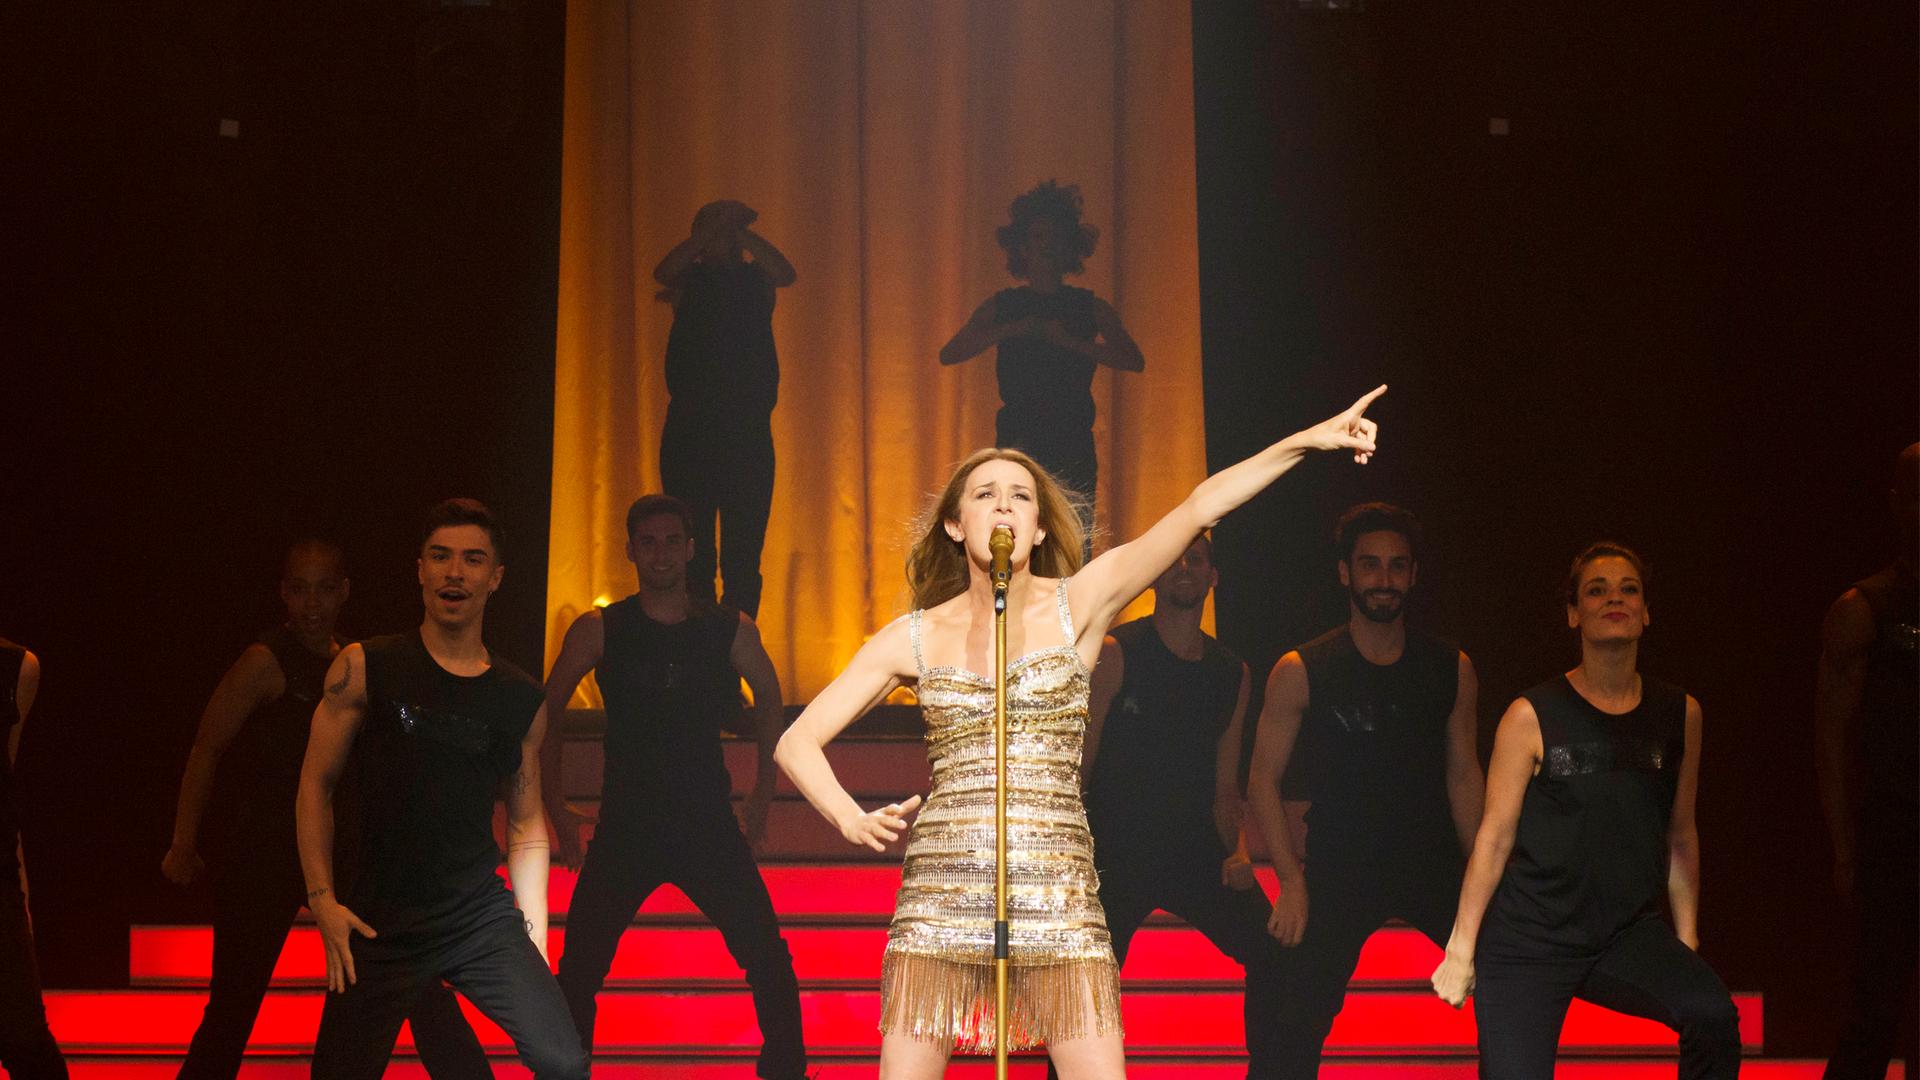 Die Darstellerin der "Aline" in gewohnter Céline-Dion-Pose auf der großen Bühne, im Hintergrund Tänzer*innen vor roten Stufen.